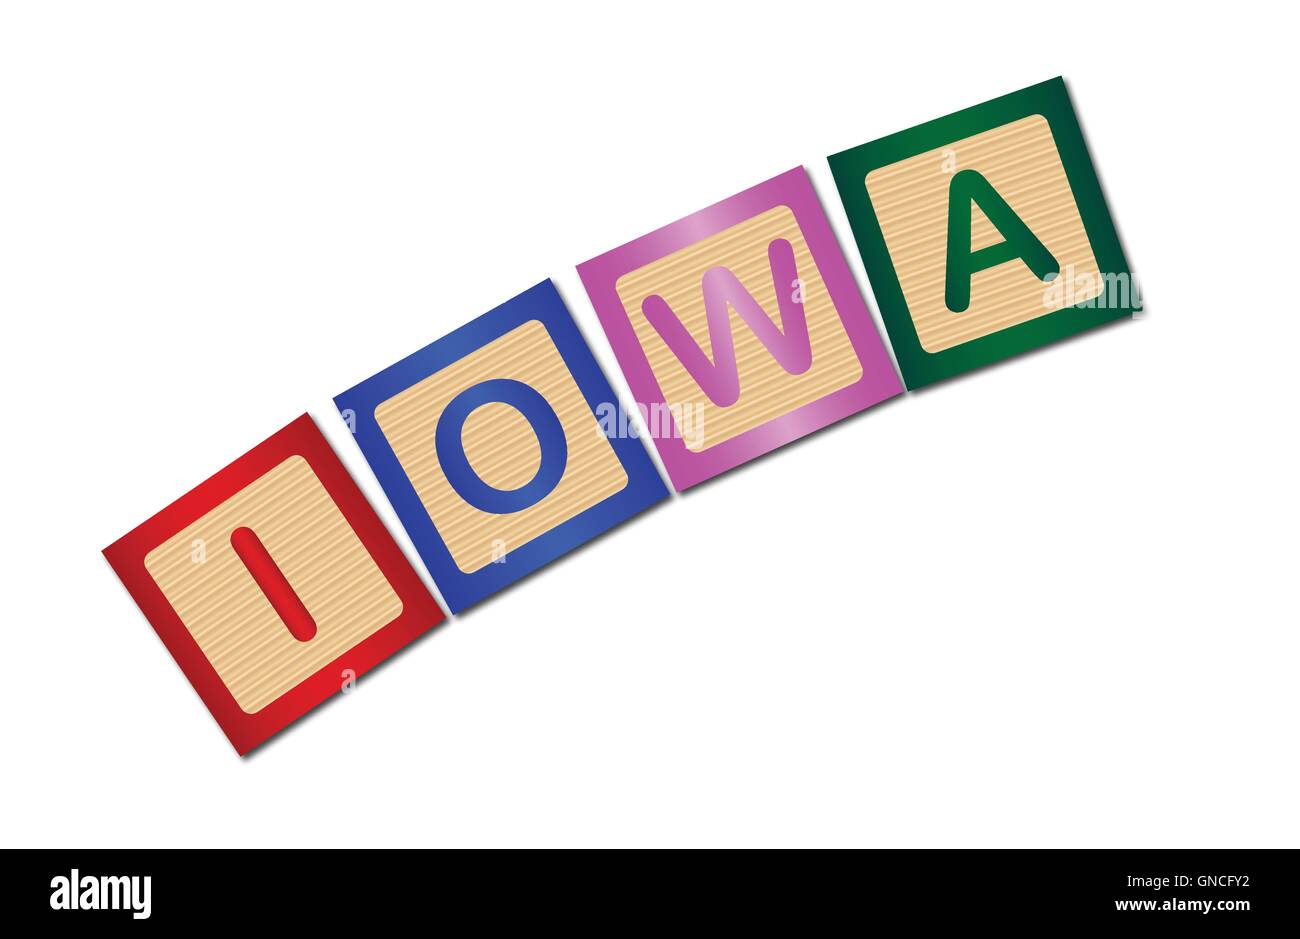 Iowa Wooden Block Letters Stock Vector